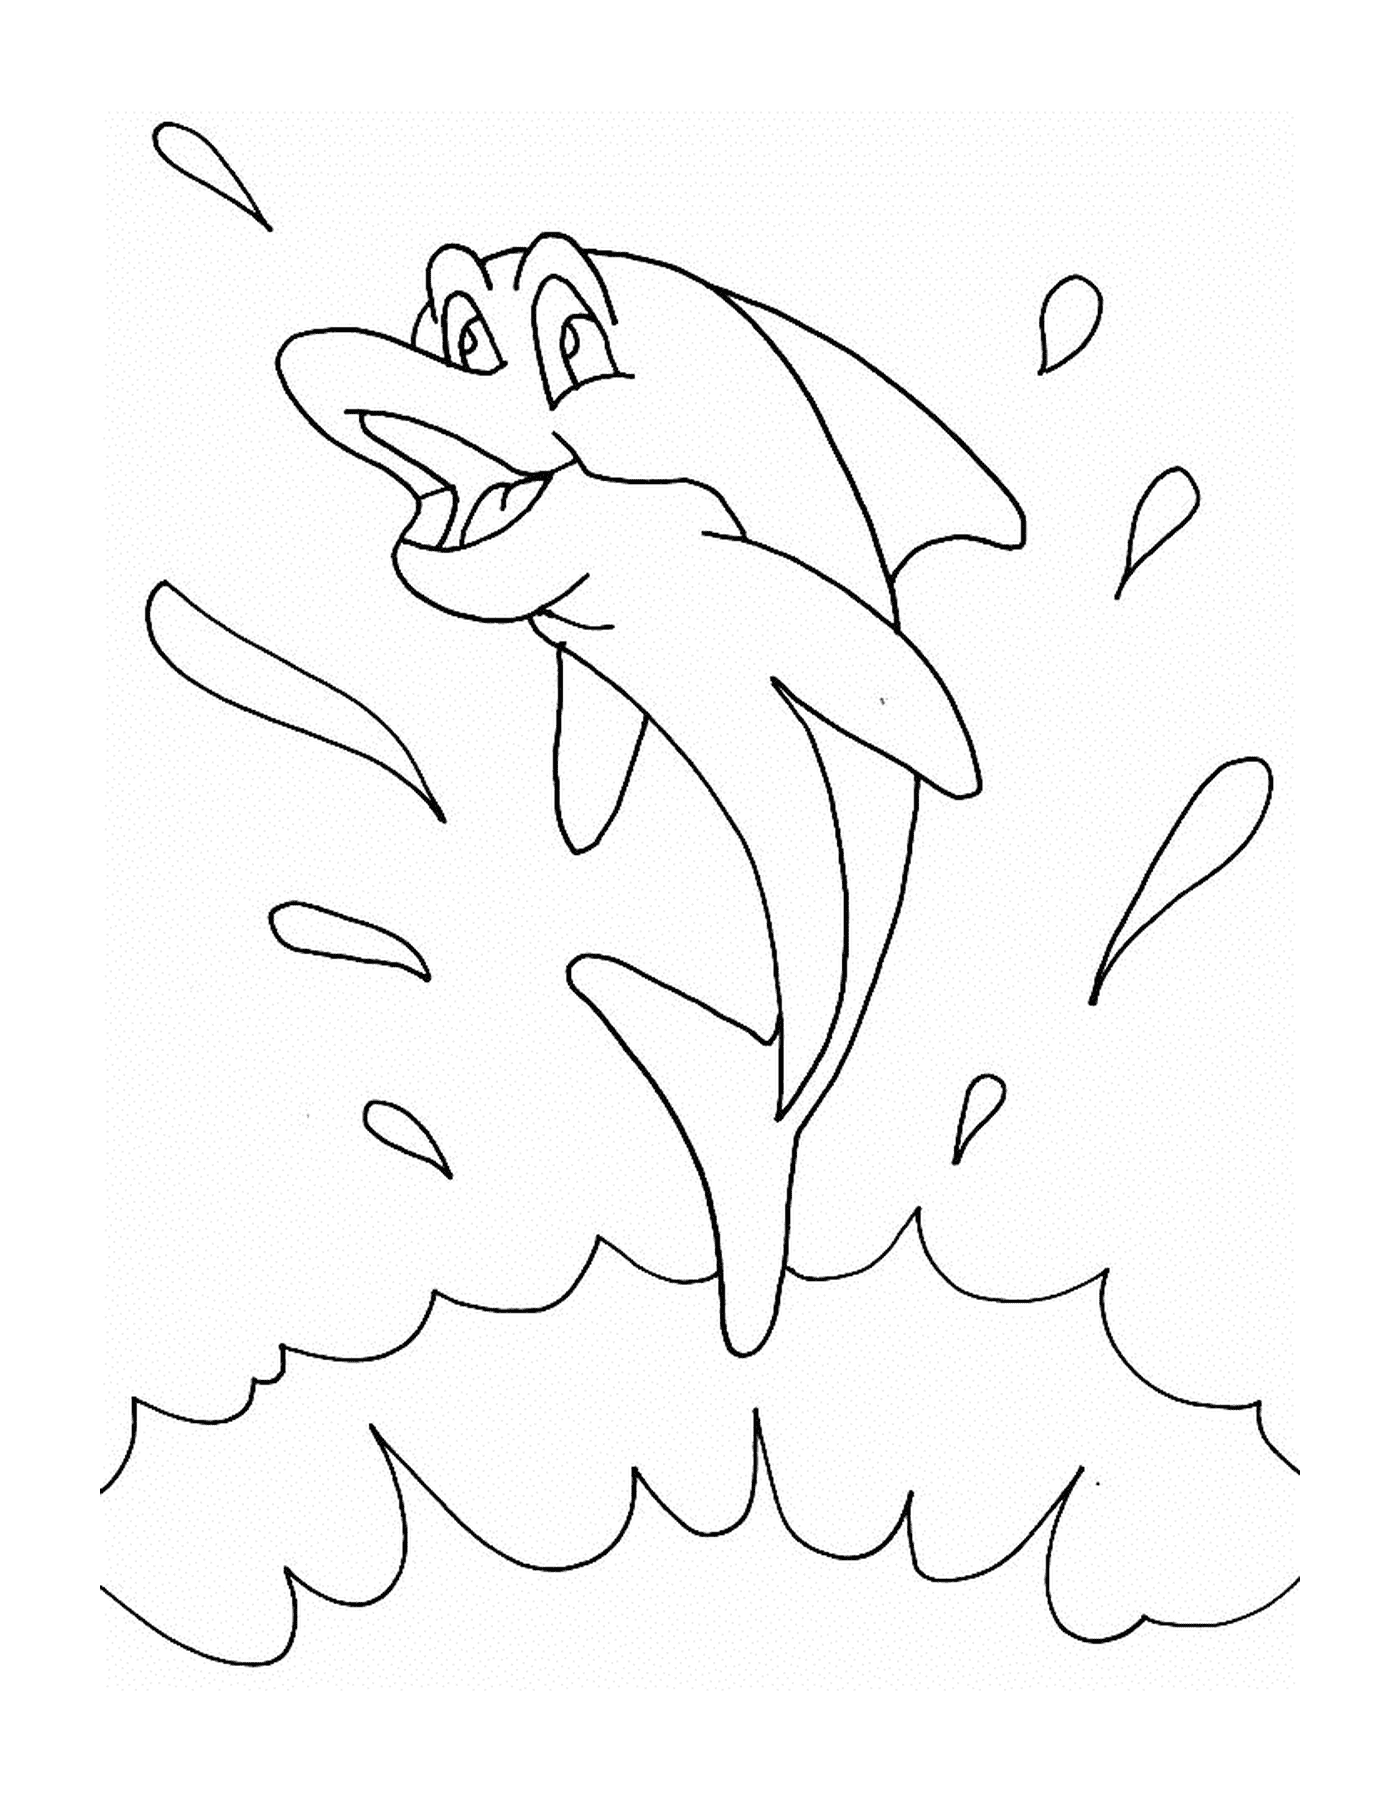  Un delfino che salta e schizza 